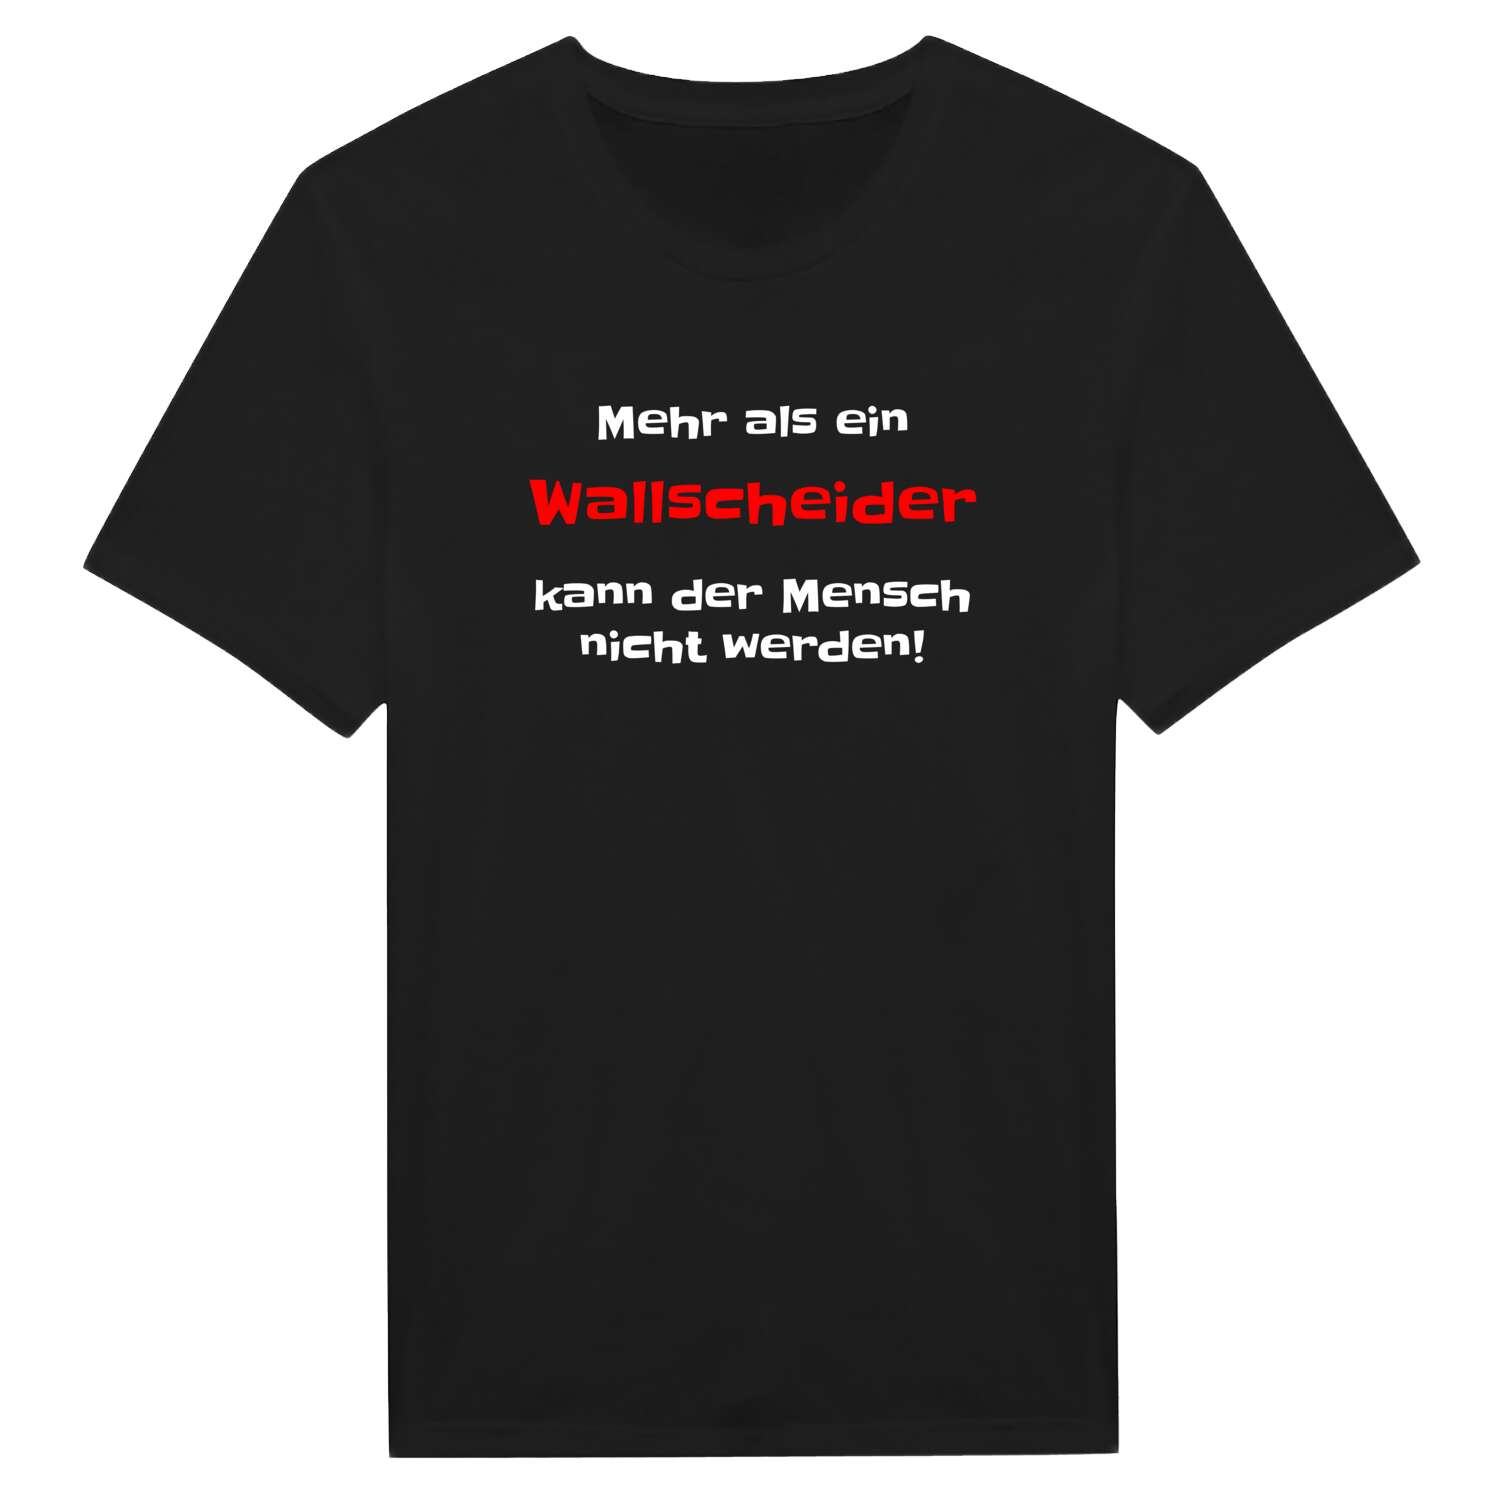 Wallscheid T-Shirt »Mehr als ein«